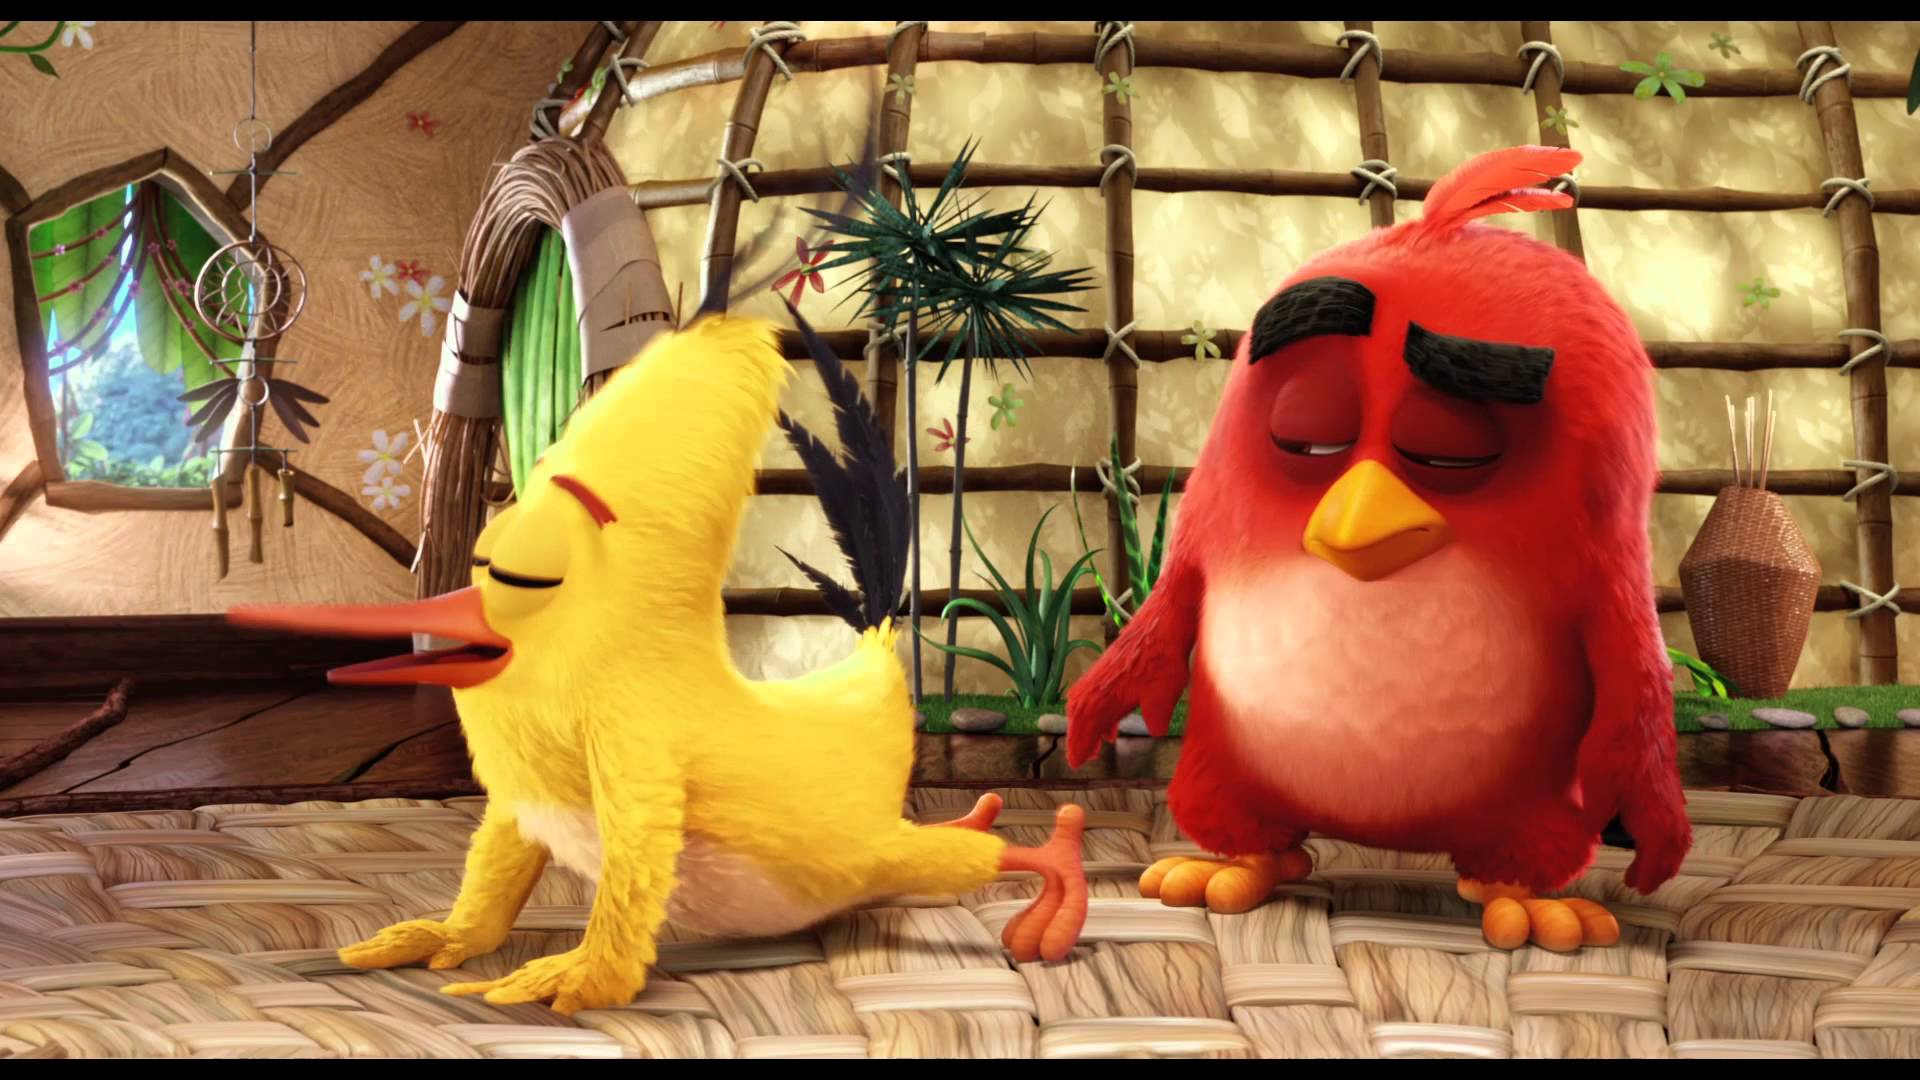 Showing Media & Posts for Angry birds movie toys xxx | www.veu.xxx